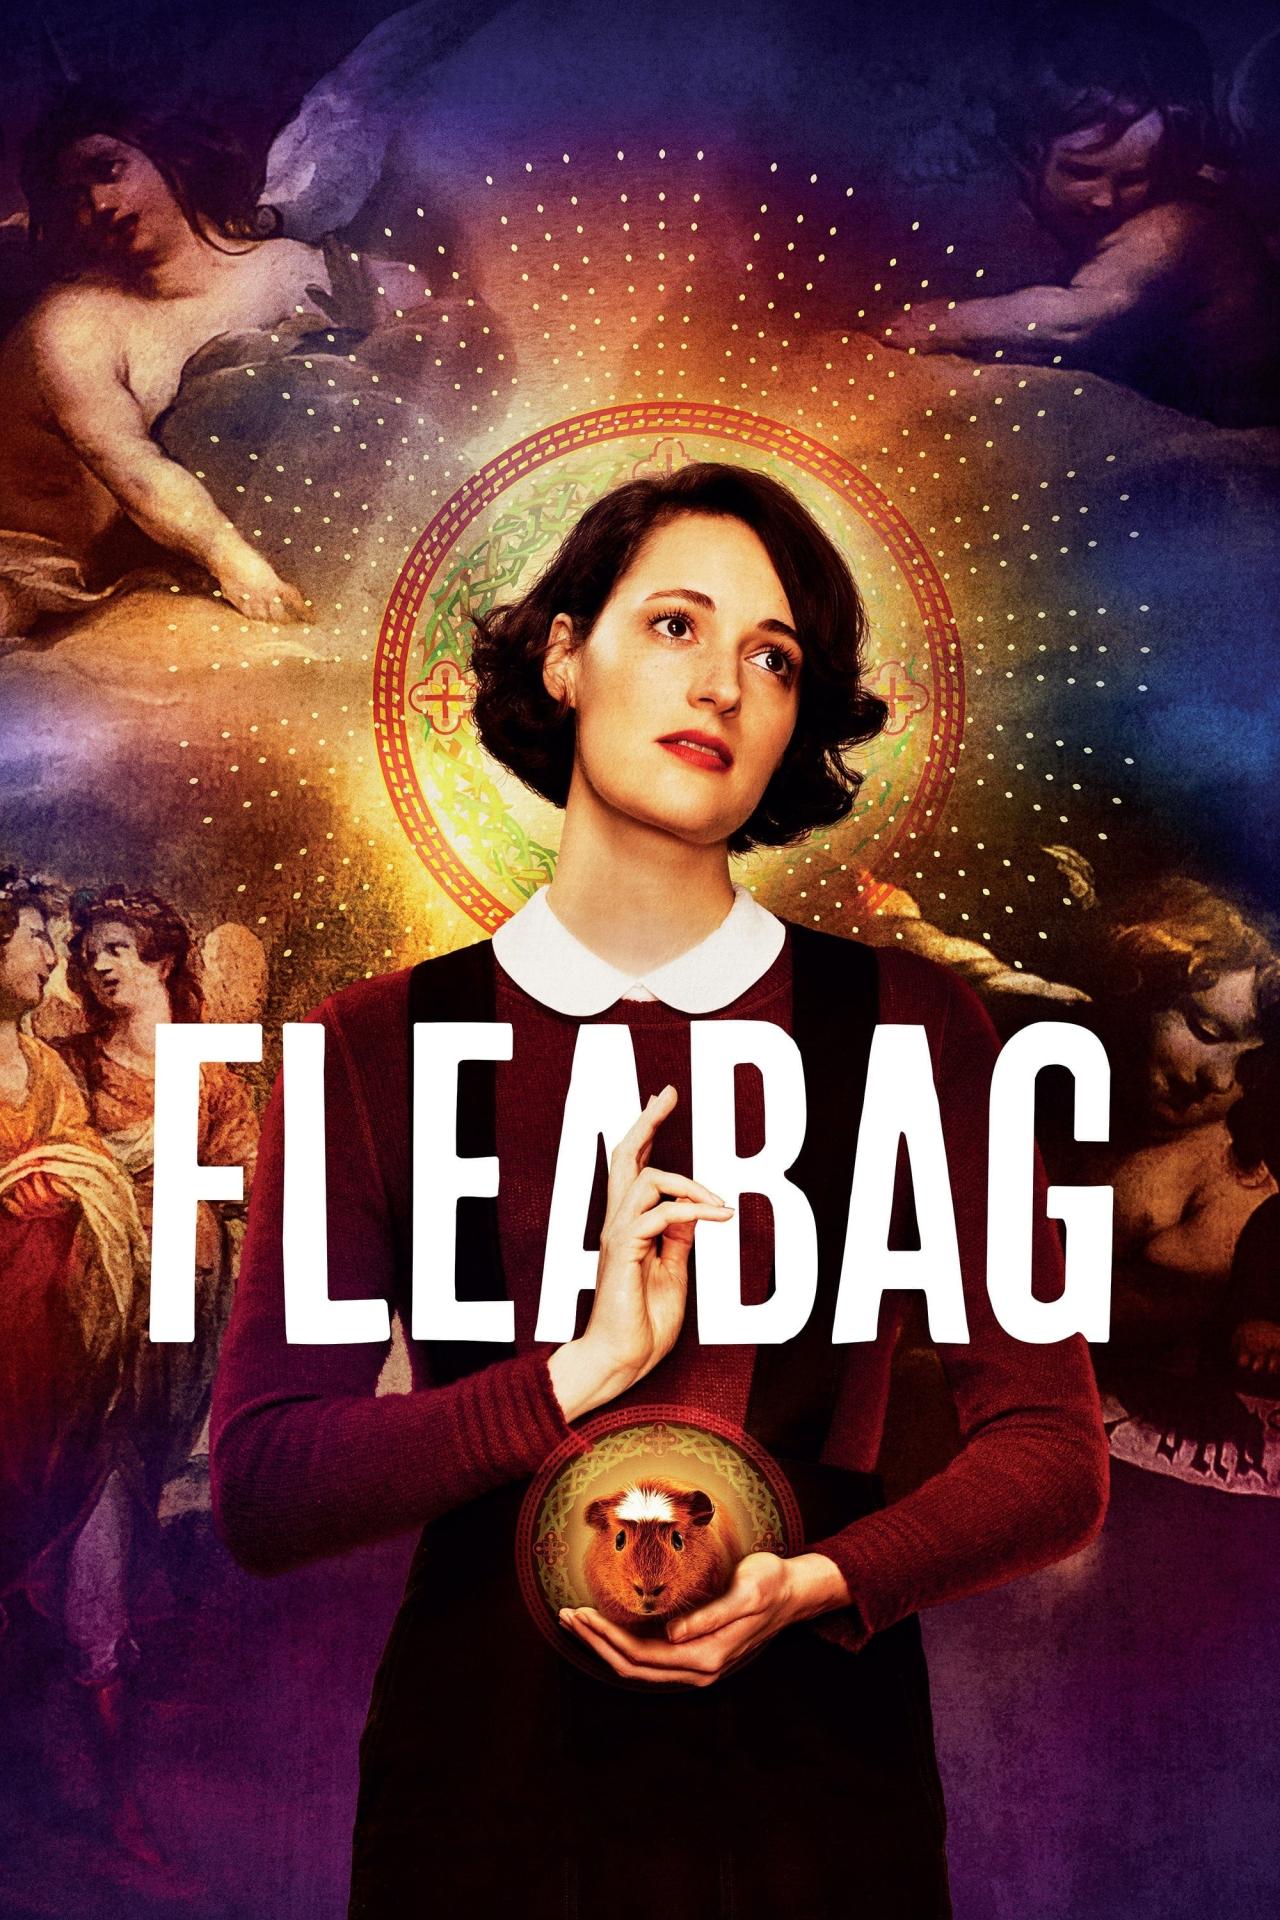 Affiche de la série Fleabag